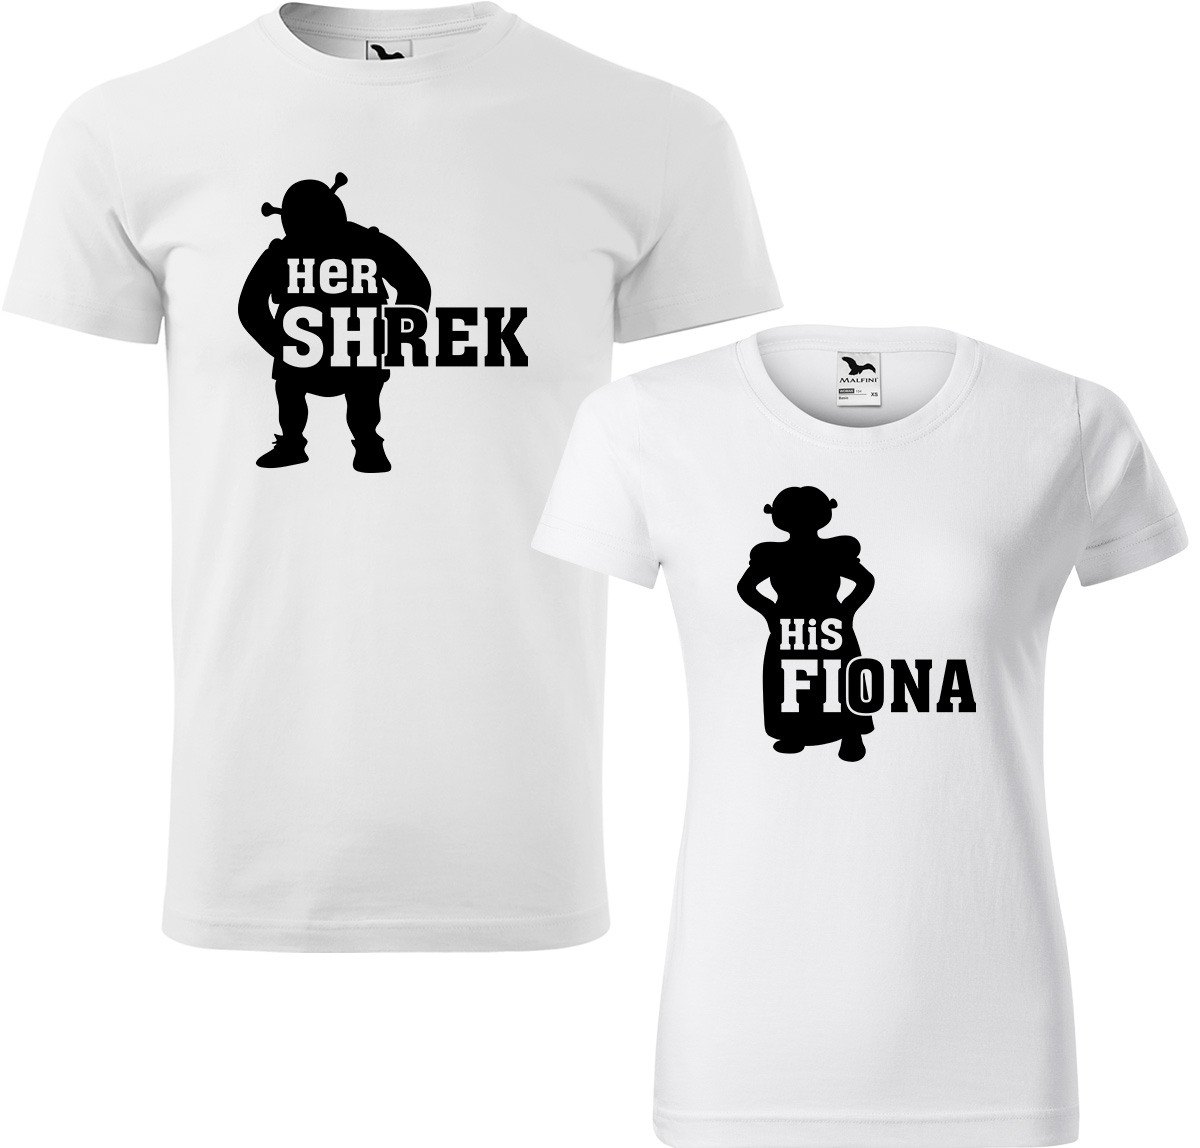 Trička pro páry - Shrek a Fiona Barva: Bílá (00), Velikost dámské tričko: M, Velikost pánské tričko: L